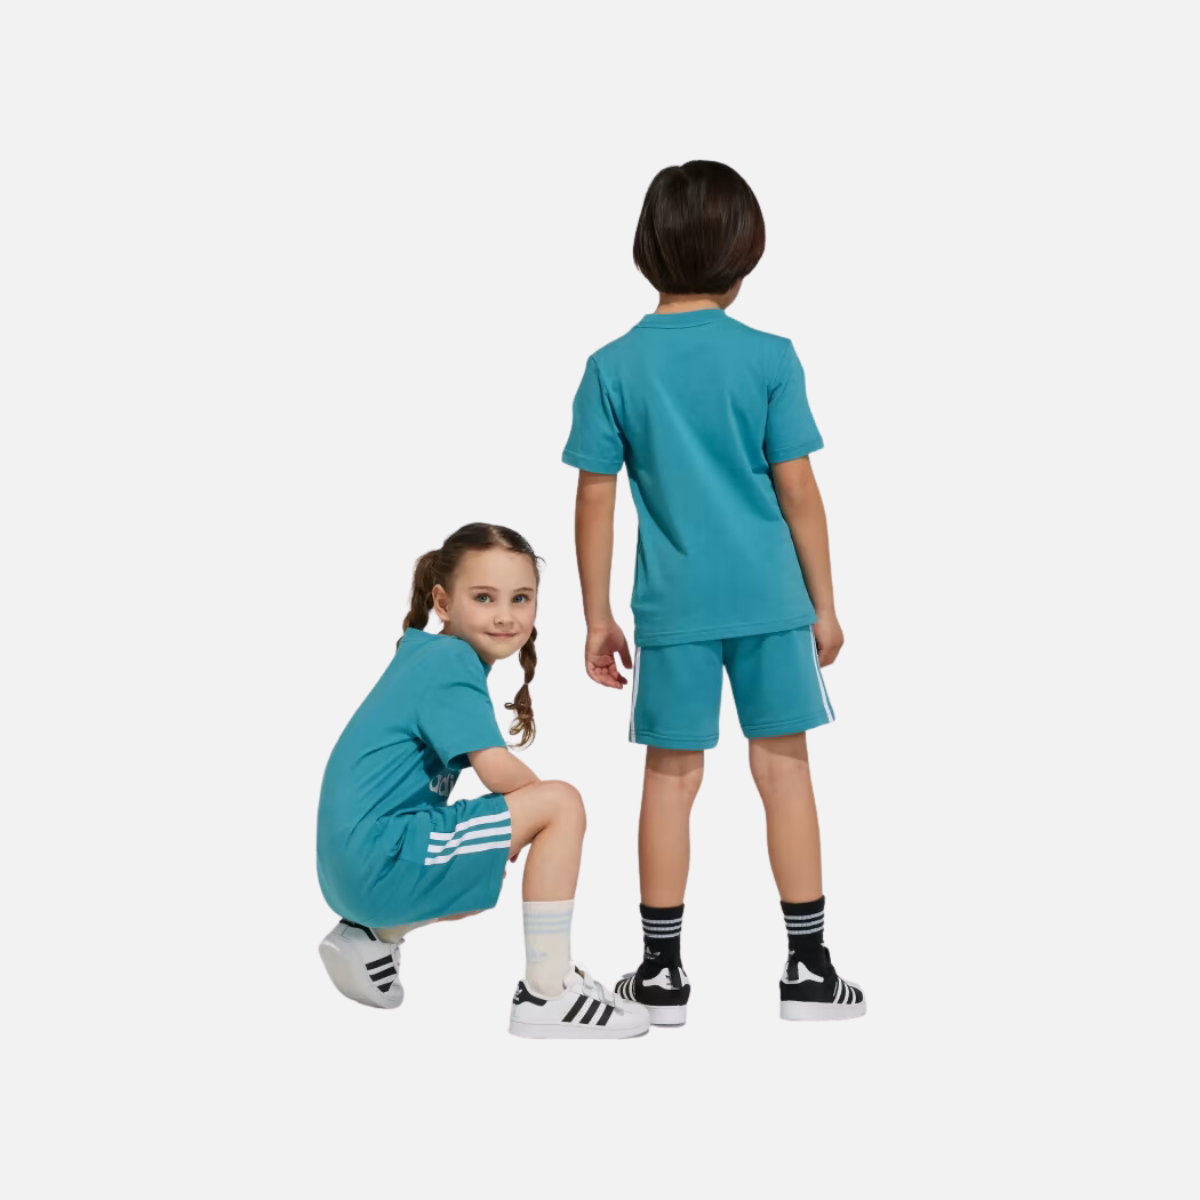 Adidas Adicolor Kids Unisex  Shorts and T-shirt Set (3-8Year)  -Arctic Fusion/White